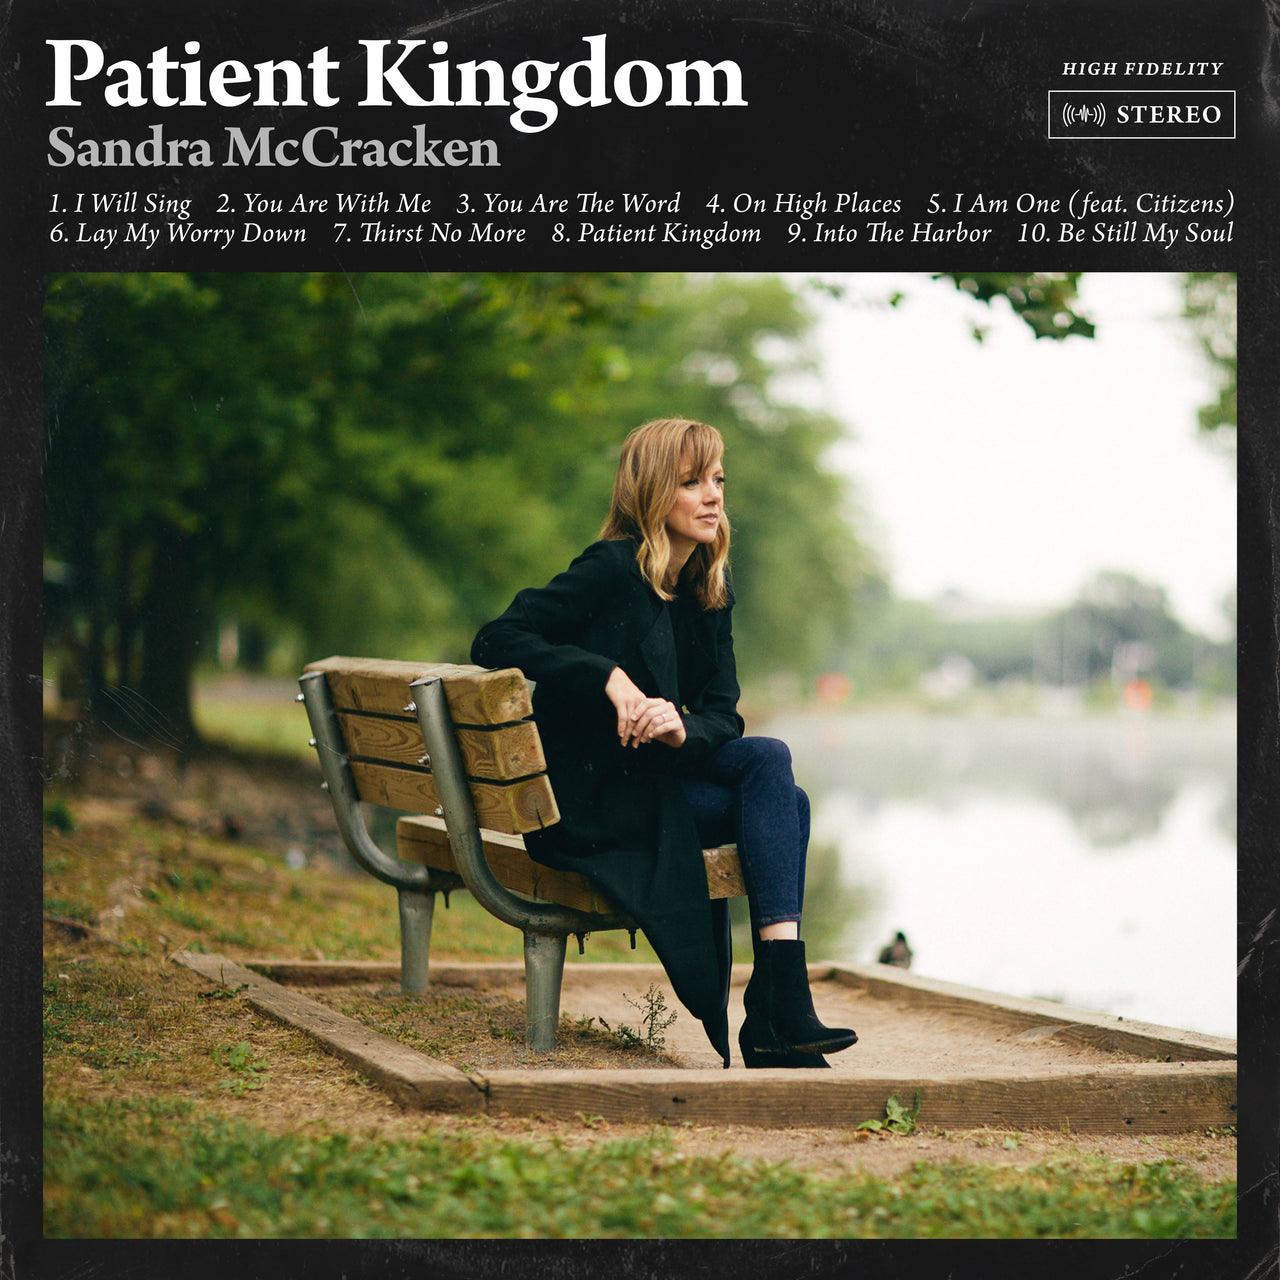 Sandra McCracken: Patient Kingdom Vinyl LP